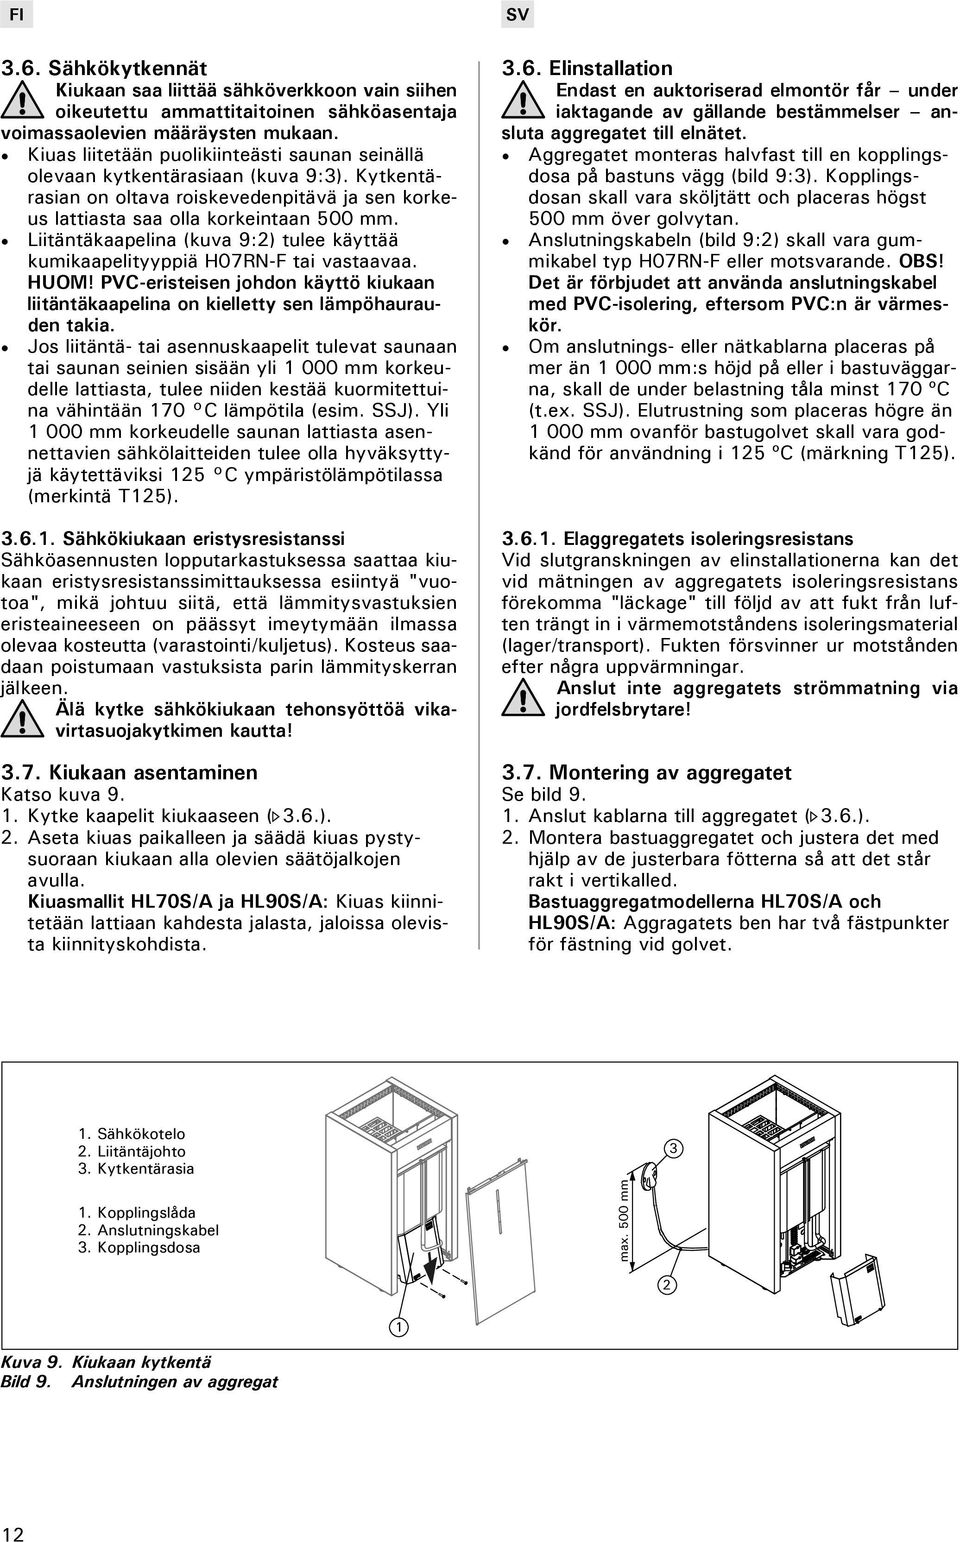 Liitäntäkaapelina (kuva 9:2) tulee käyttää kumikaapelityyppiä H07RN-F tai vastaavaa. HUOM! PVC-eristeisen johdon käyttö kiukaan liitäntäkaapelina on kielletty sen lämpöhaurauden takia.